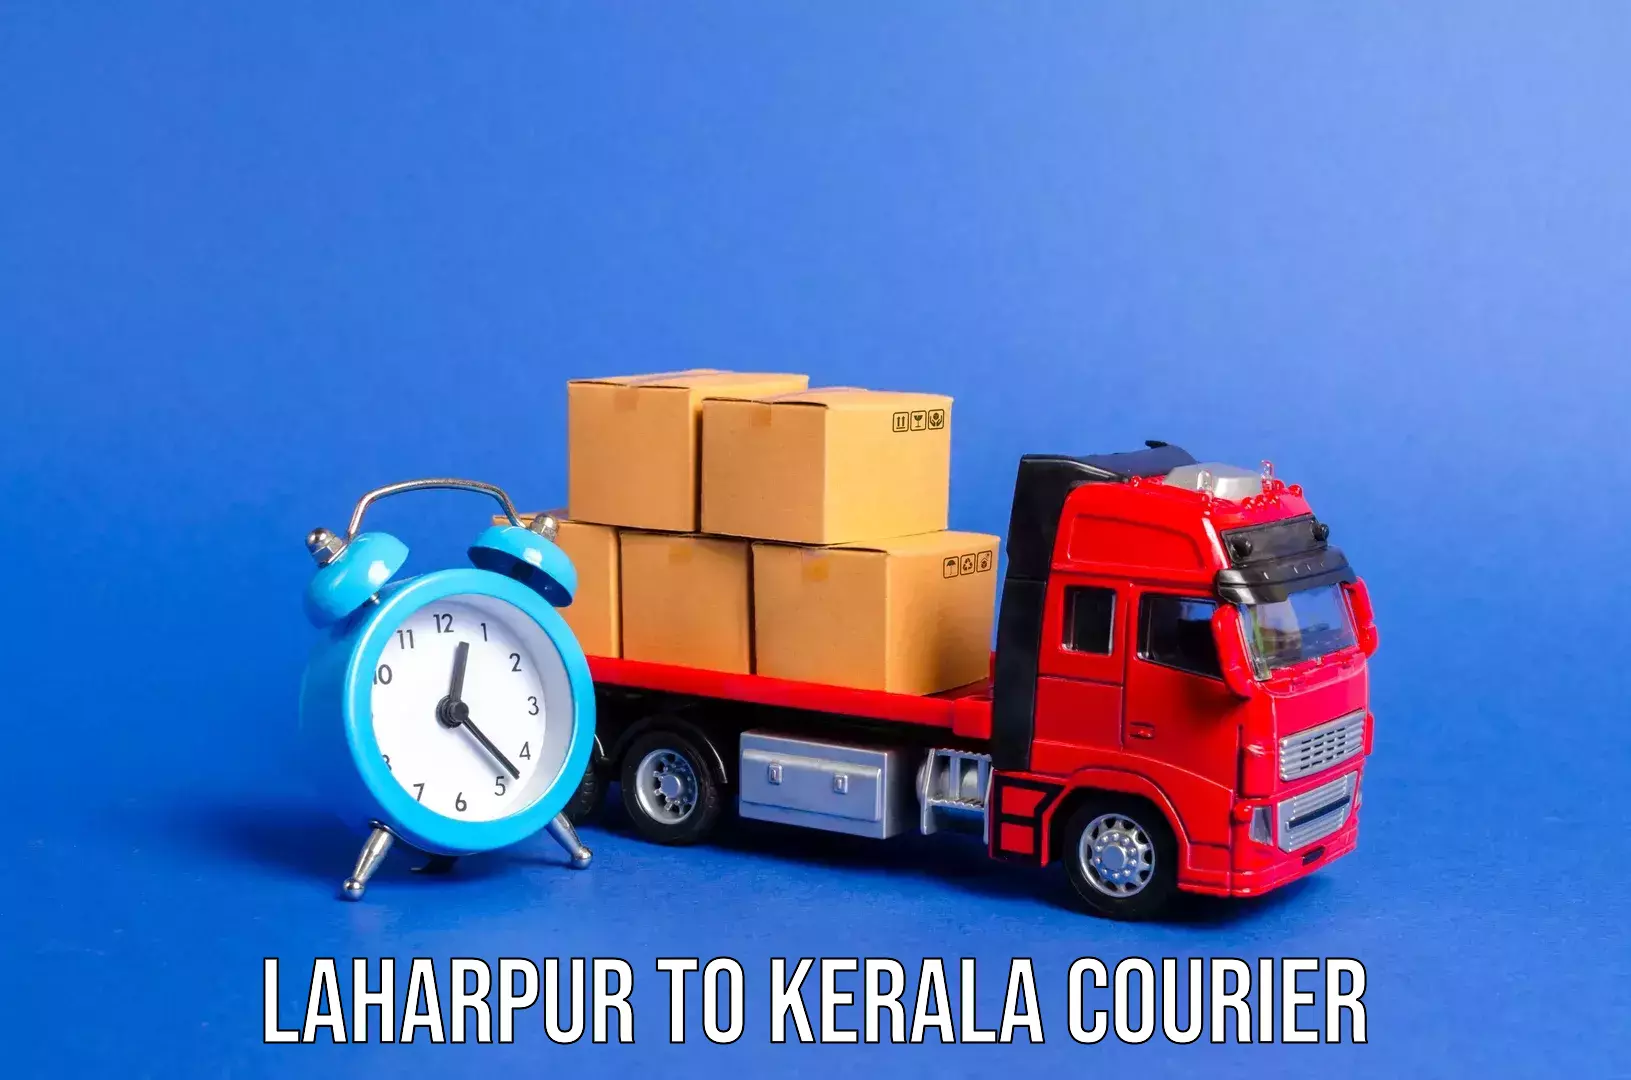 Baggage transport management Laharpur to Punalur